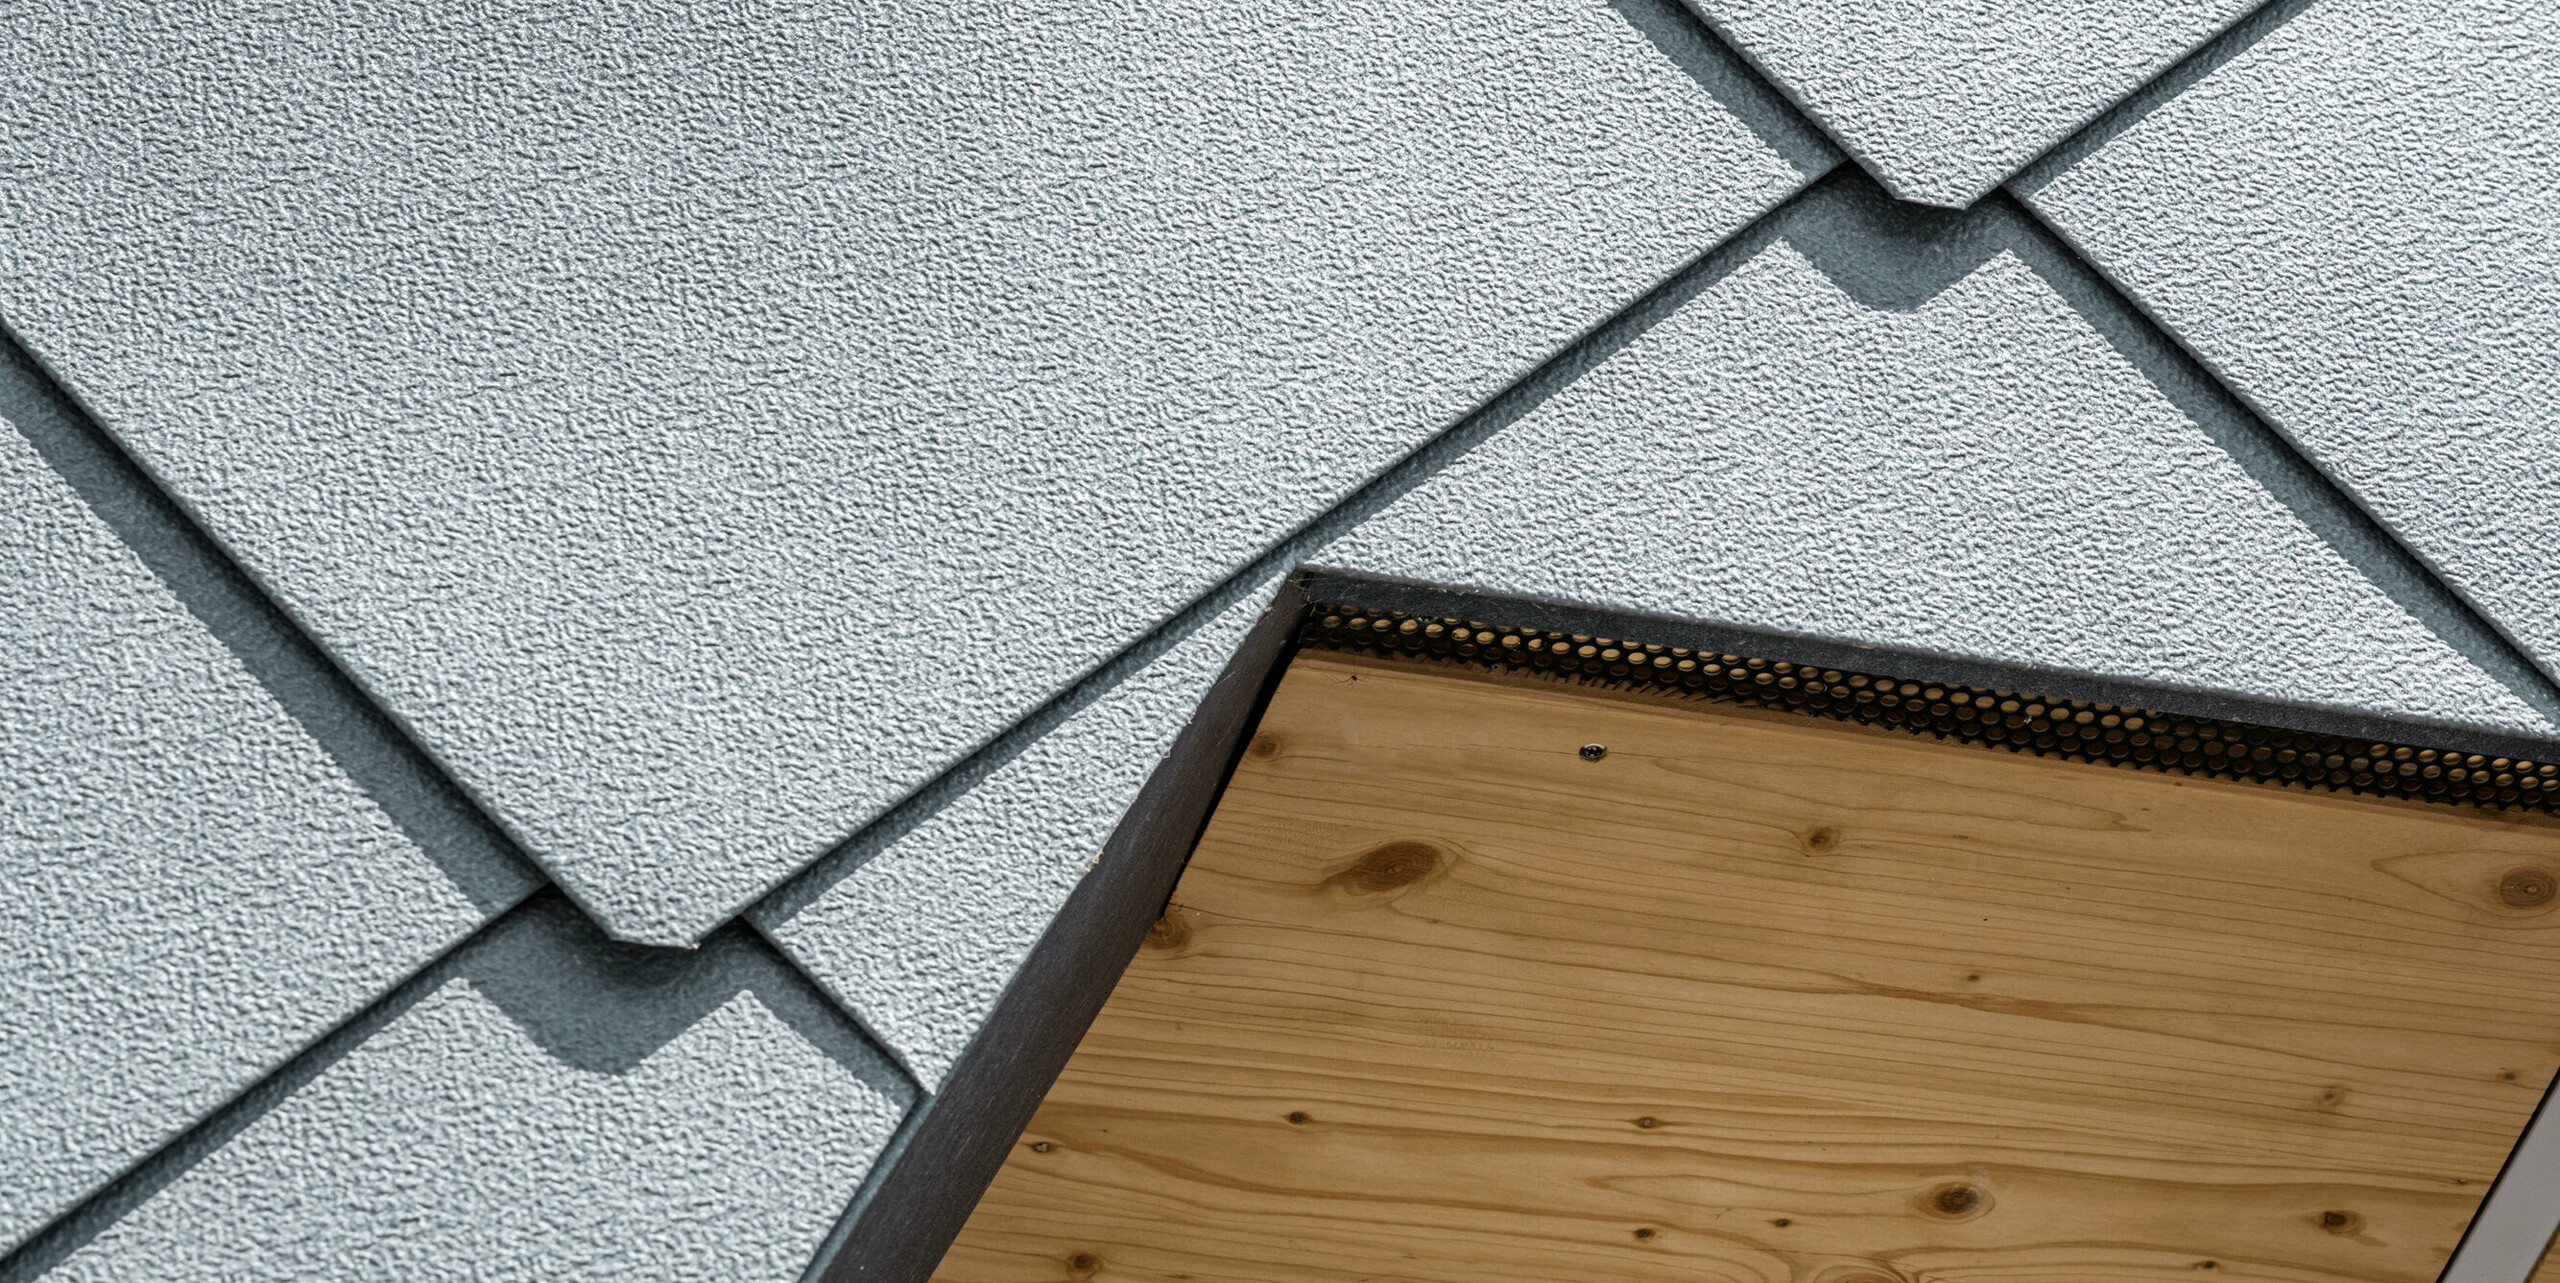 Detailaufnahme der Schnittstelle zwischen Holz und Aluminium am Sportgebäude FC Prilly-Sports in der Schweiz. Die robuste Oberfläche der PREFA Dachrauten 44x44 in P.10 Steingrau wurde durch die bewährte Stucco-Prägung verfestigt, wodurch das Aluminium unempfindlicher gegen Bearbeitungsspuren ist. Als Gegenstück dazu ist auf der Unterseite des Daches die natürliche Holzverkleidung zu erkennen. Diese Nahaufnahme zeigt die sorgfältige Handwerkskunst und Präzision, mit der die robusten, wetterbeständigen Aluminiumelemente in die architektonische Struktur der Sportanlage integriert sind. Zudem wird die ästhetische Verbindung von modernen Baustoffen und traditionellen Materialien betont.